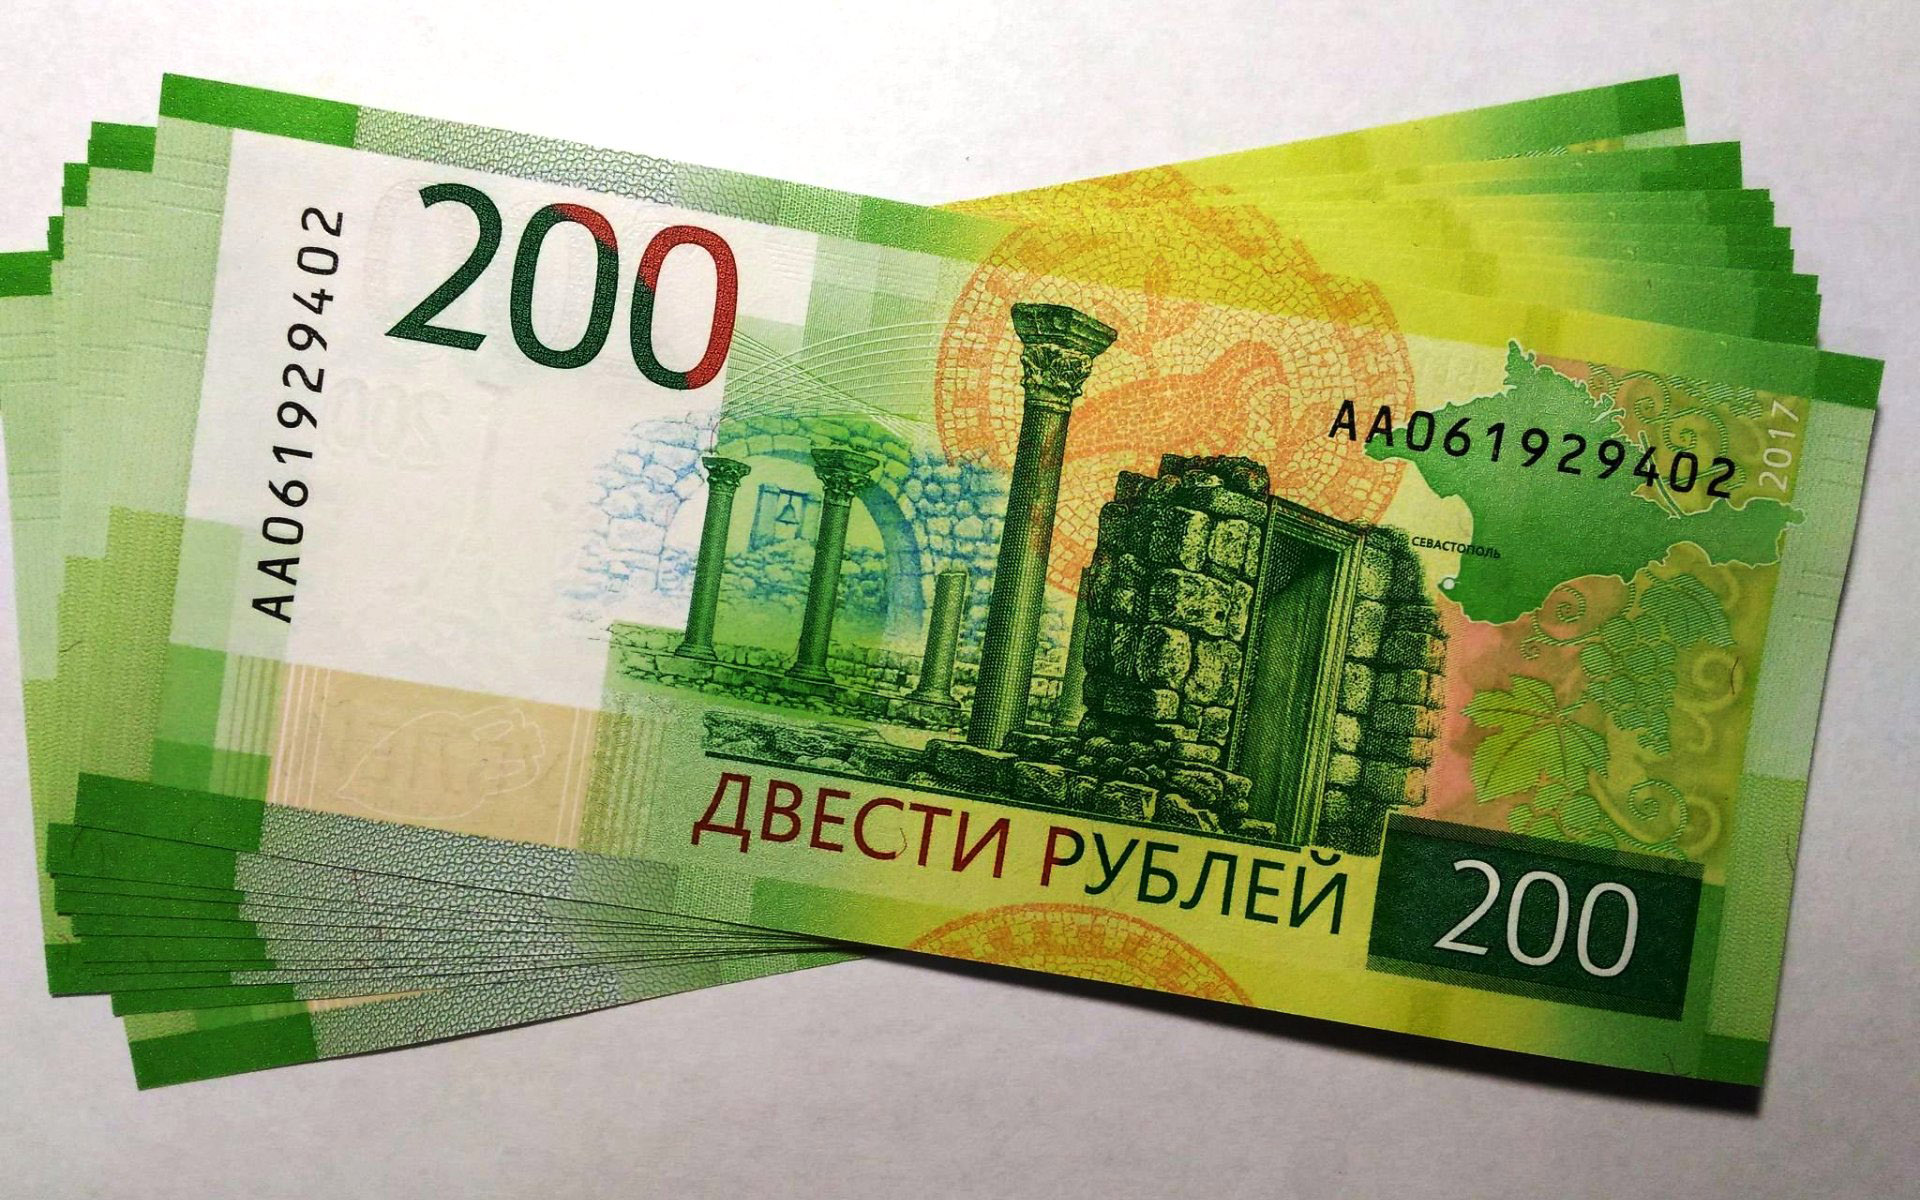 200 рублей словами. Купюра 200 рублей. 200 Рублей банкнота. 200 Рублей изображение. Купюры рубли 200 рублей.